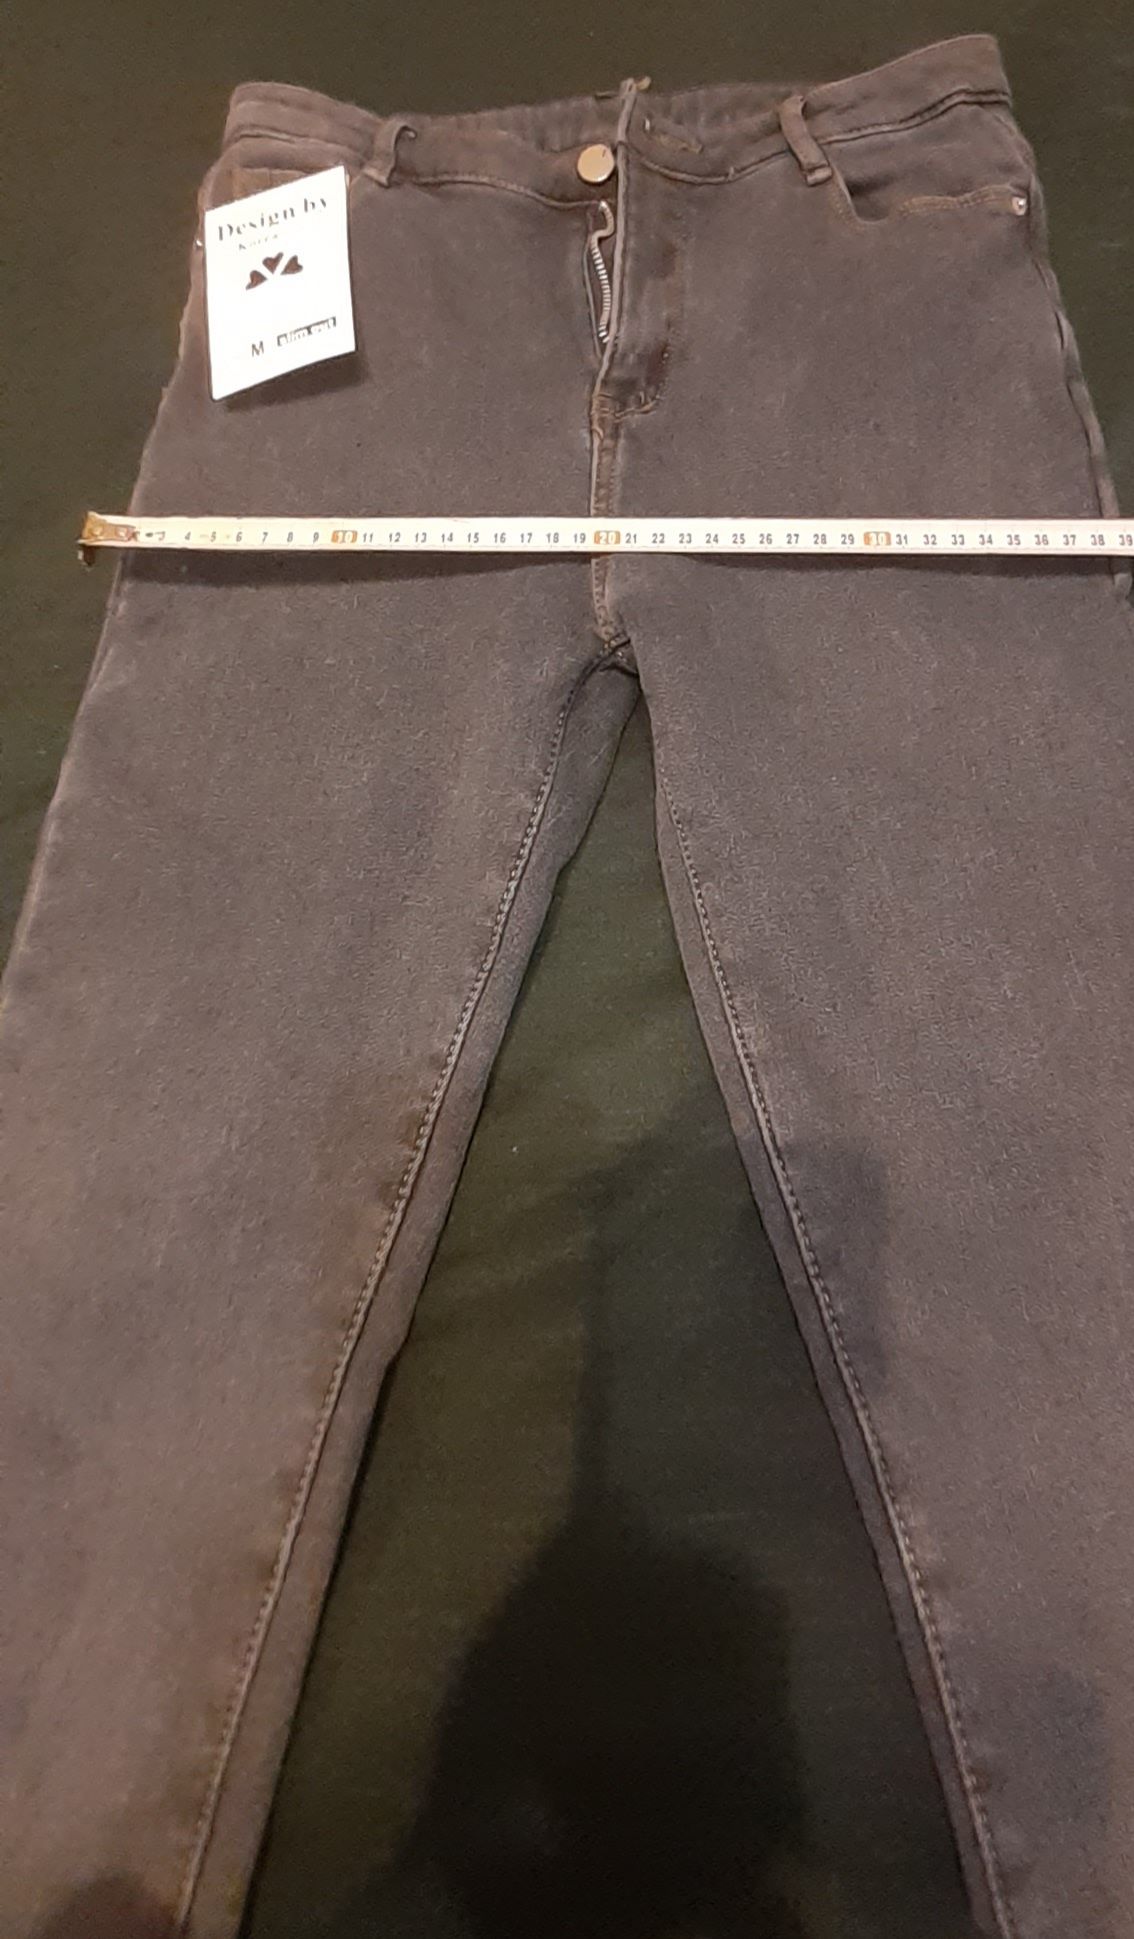 Jeans stretch căptușiți NOI cu etichetă